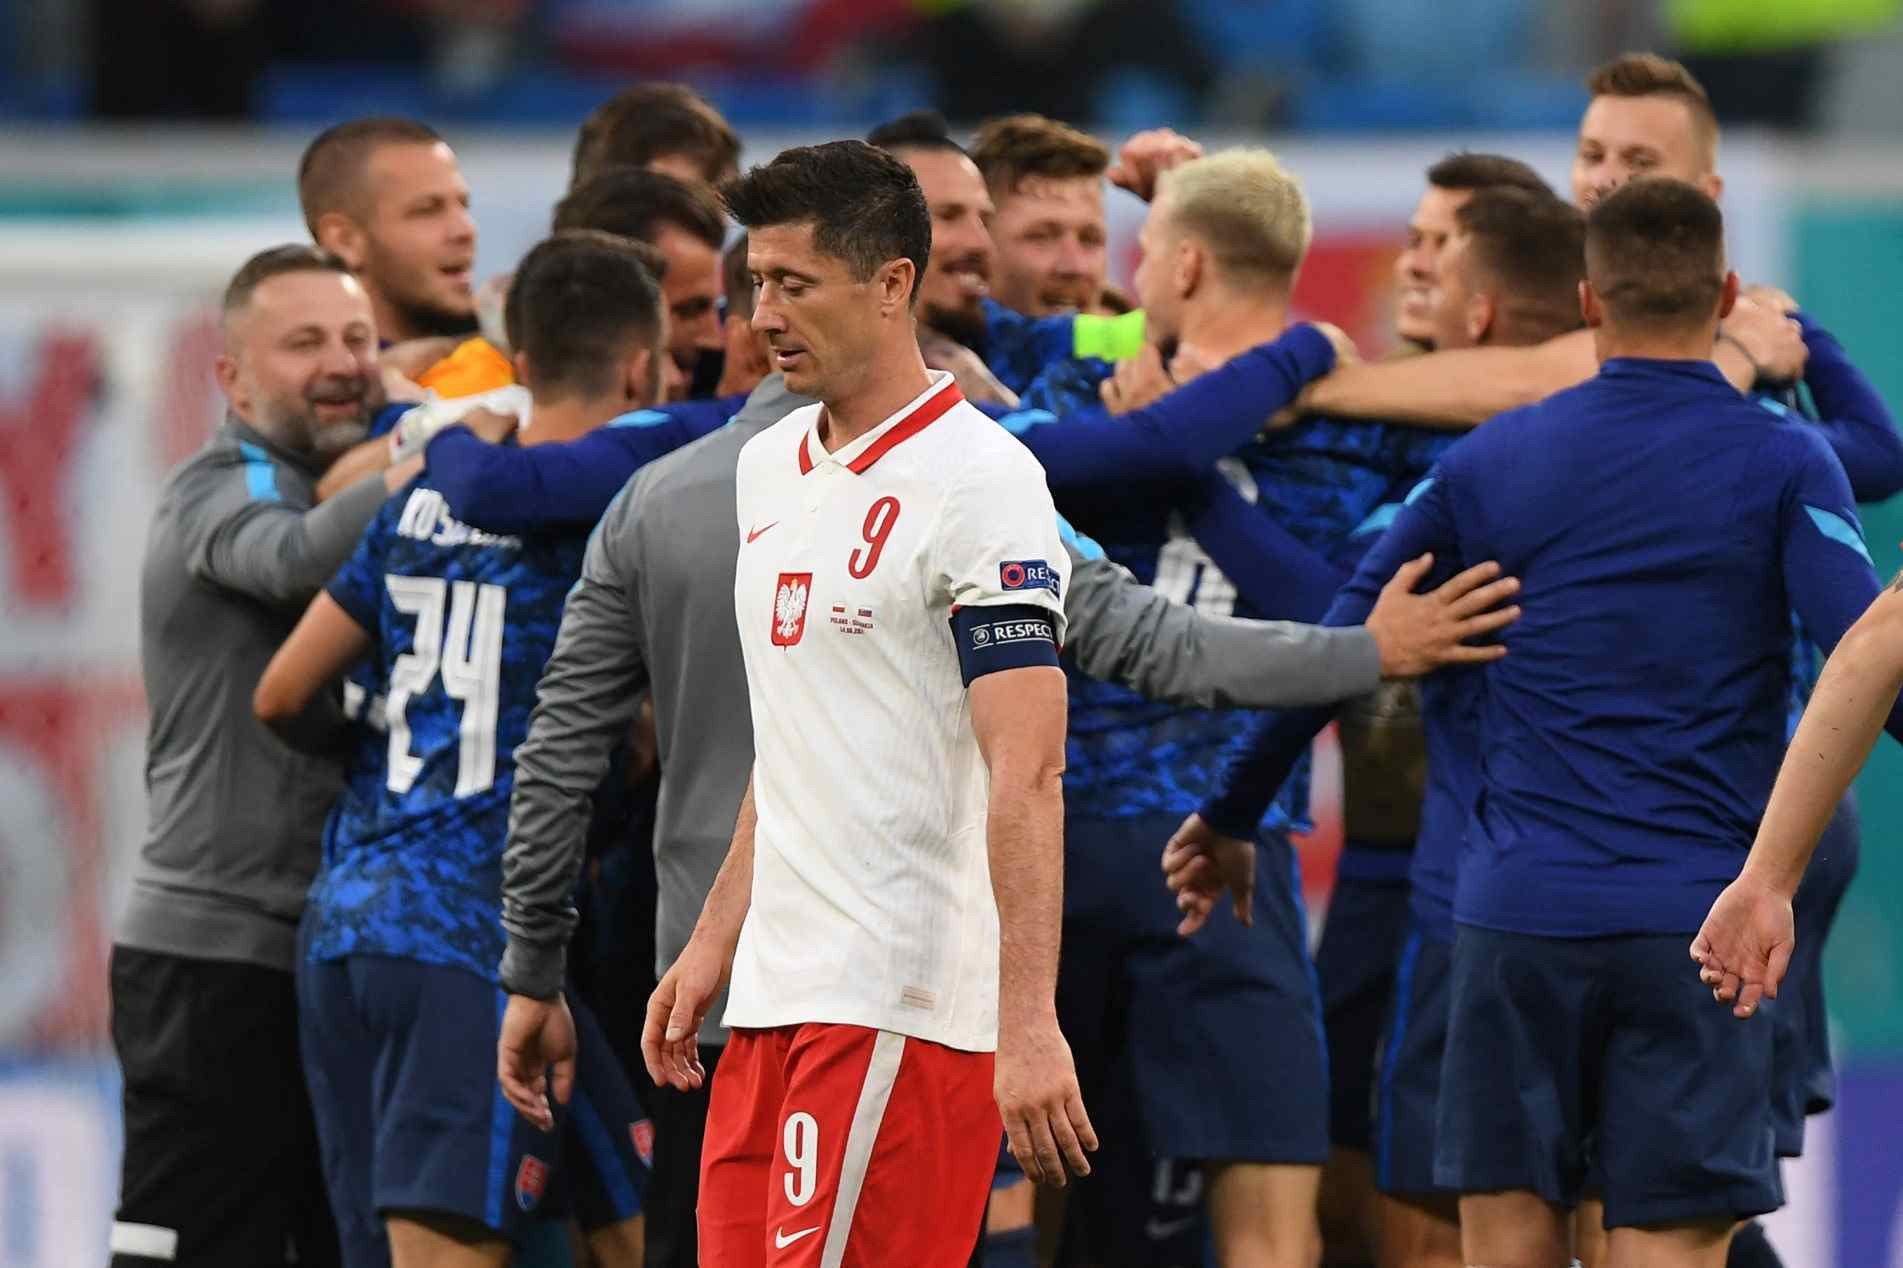 Lewandowski cabisbaixo enquanto jogadores da Eslováquia comemoram vitória